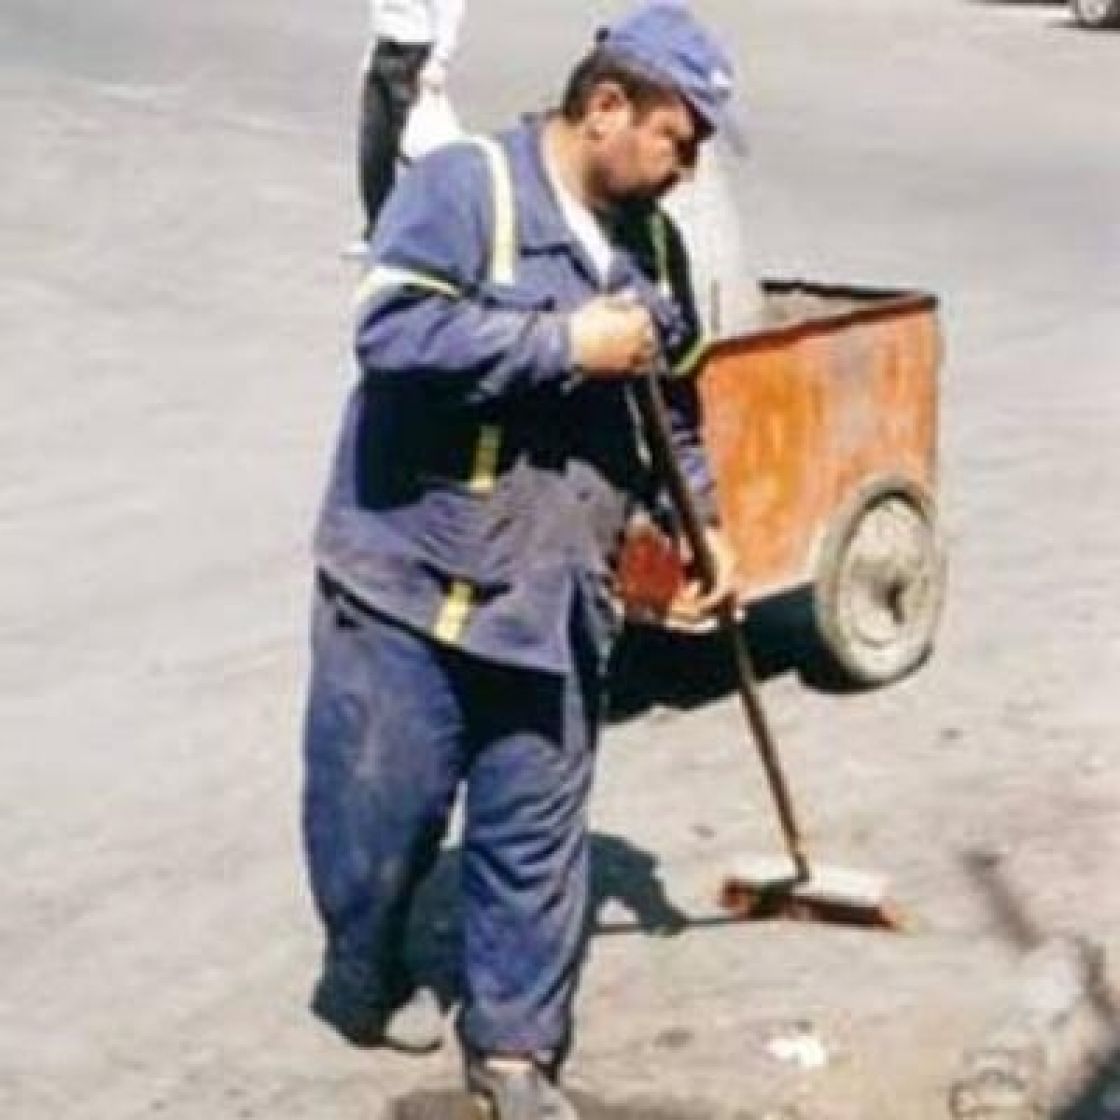 عمال النظافة..شروط عمل صعبة، وحقوق غائبة!!